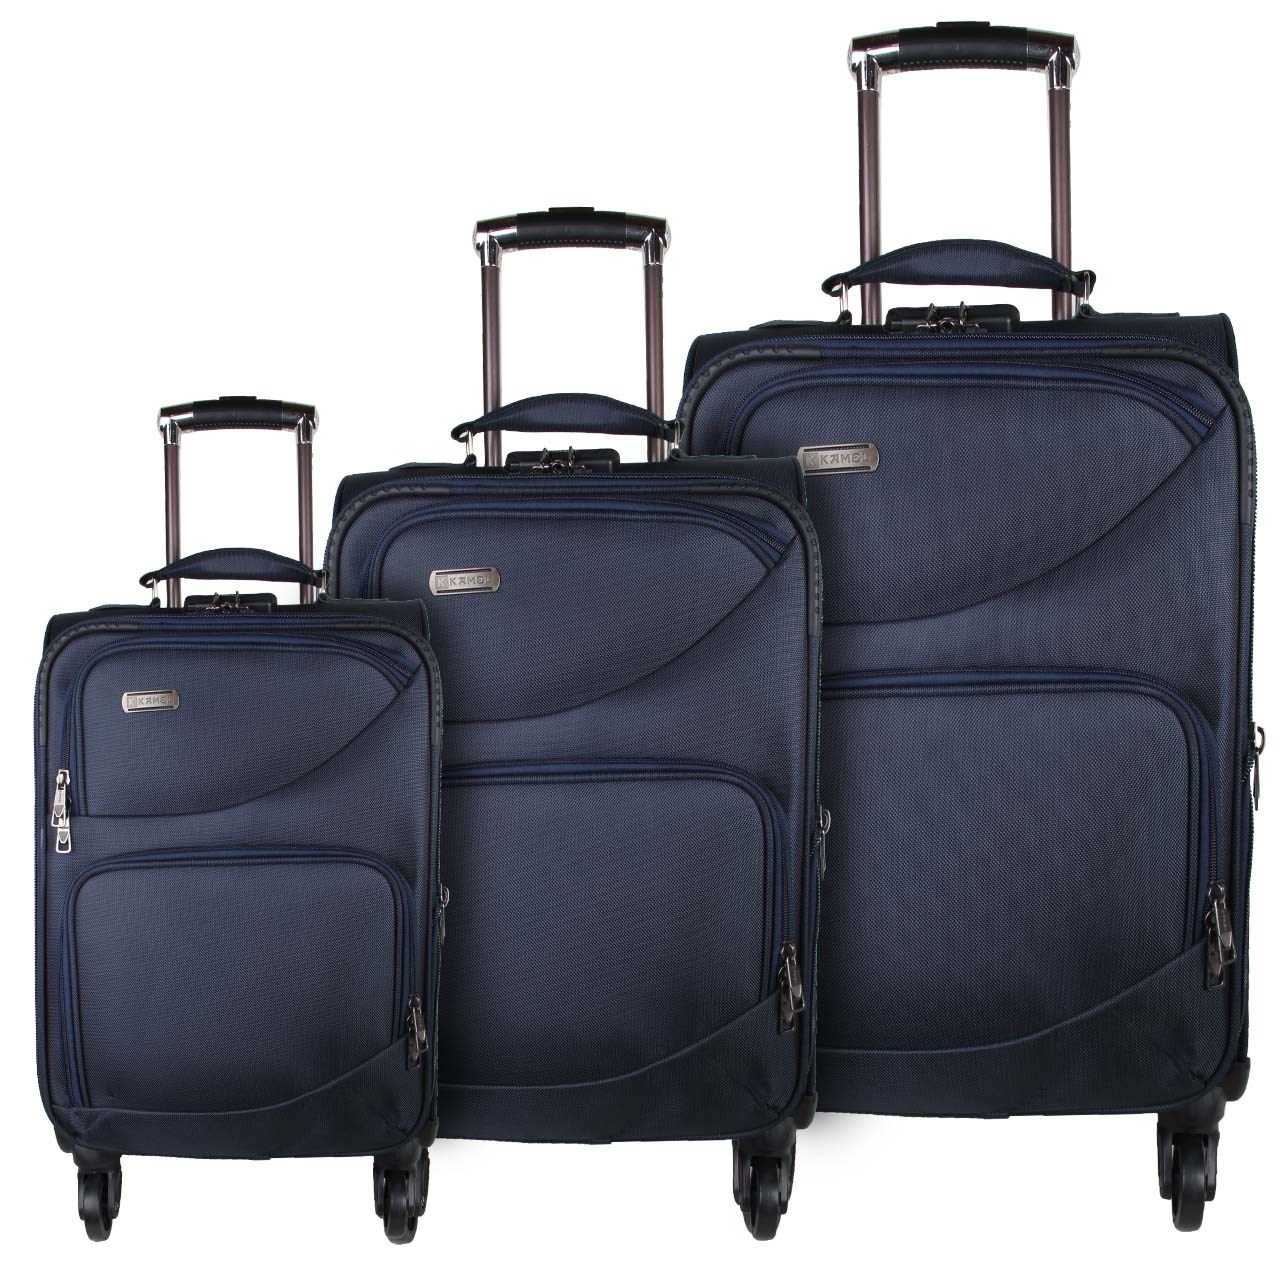 مجموعه سه عددی چمدان کامل مدل13-6036